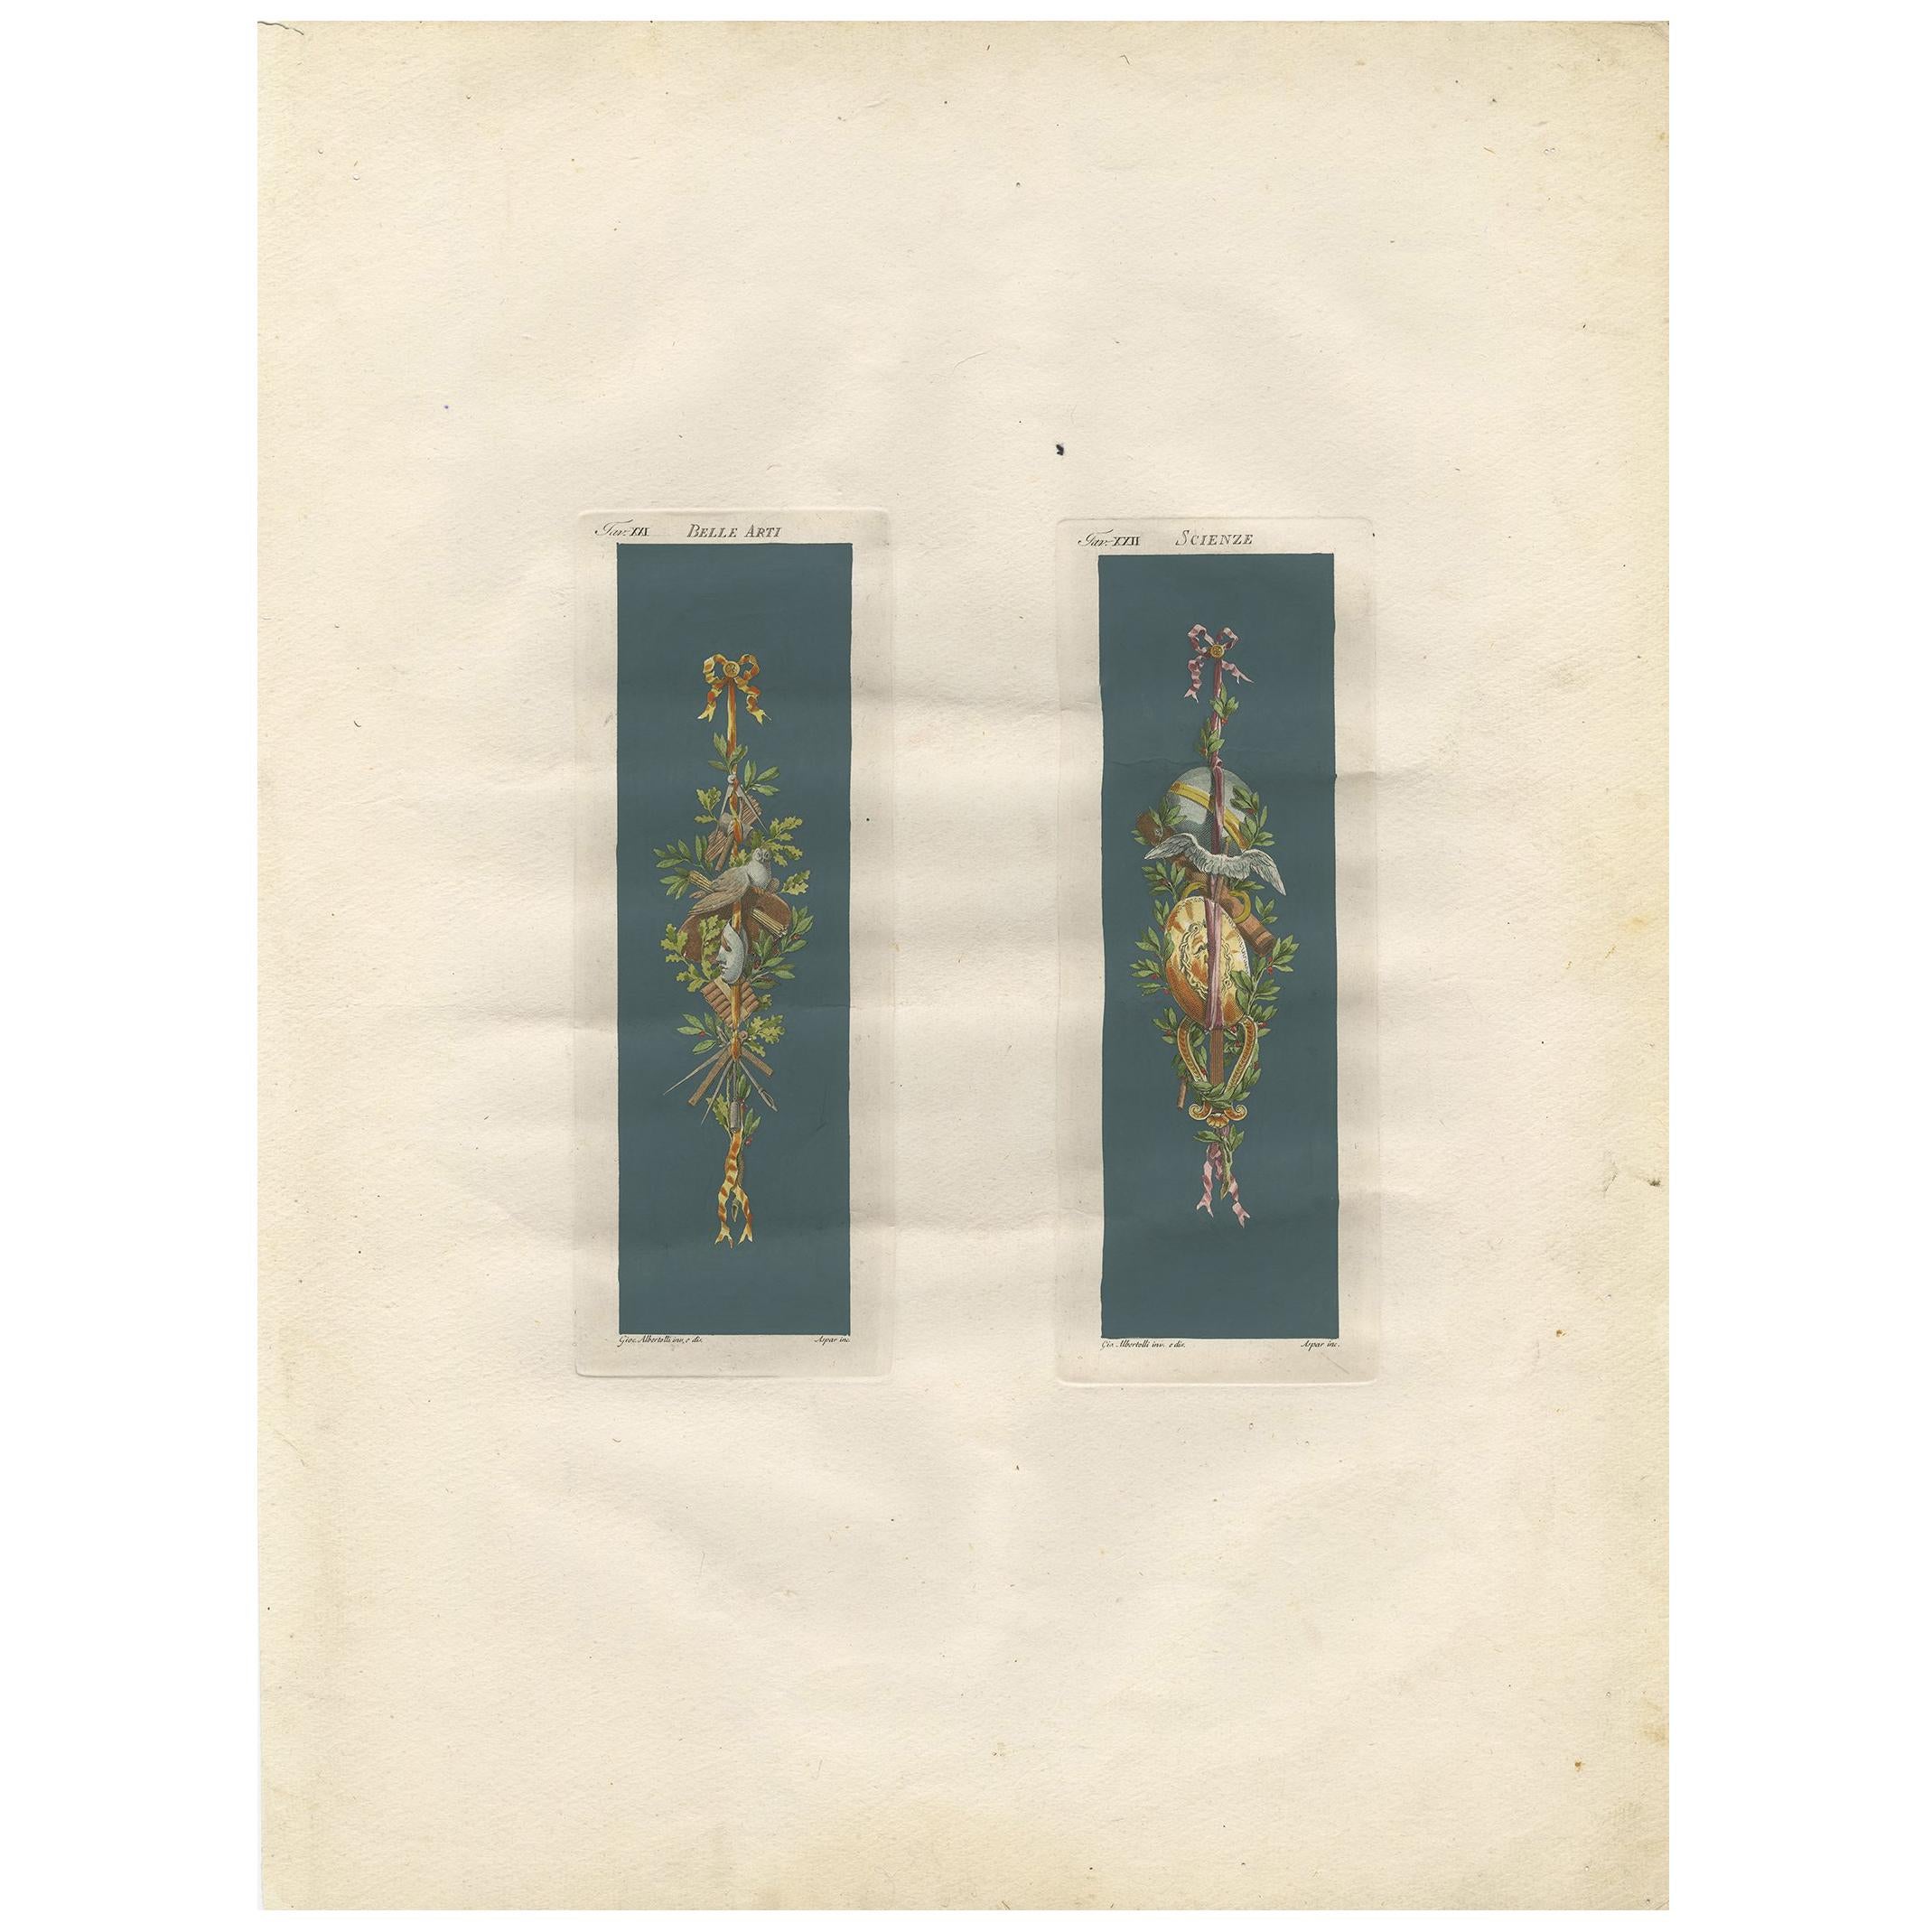 Antique Architecture Print of Ornaments ‘Belle Arti & Scienze’ by Albertolli